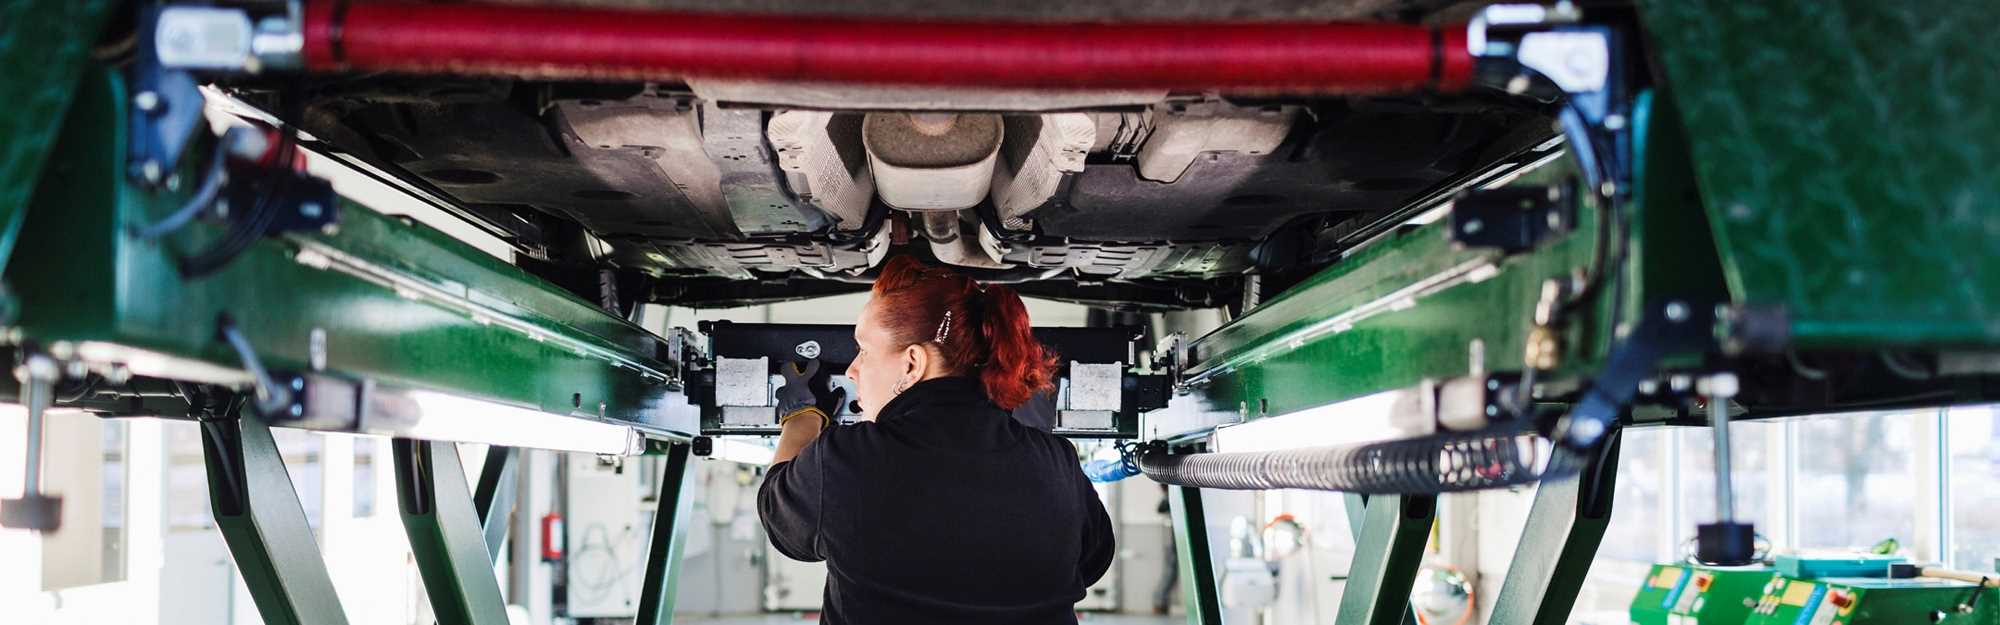 ung kvinnelig mekaniker inspiserer bilens understell